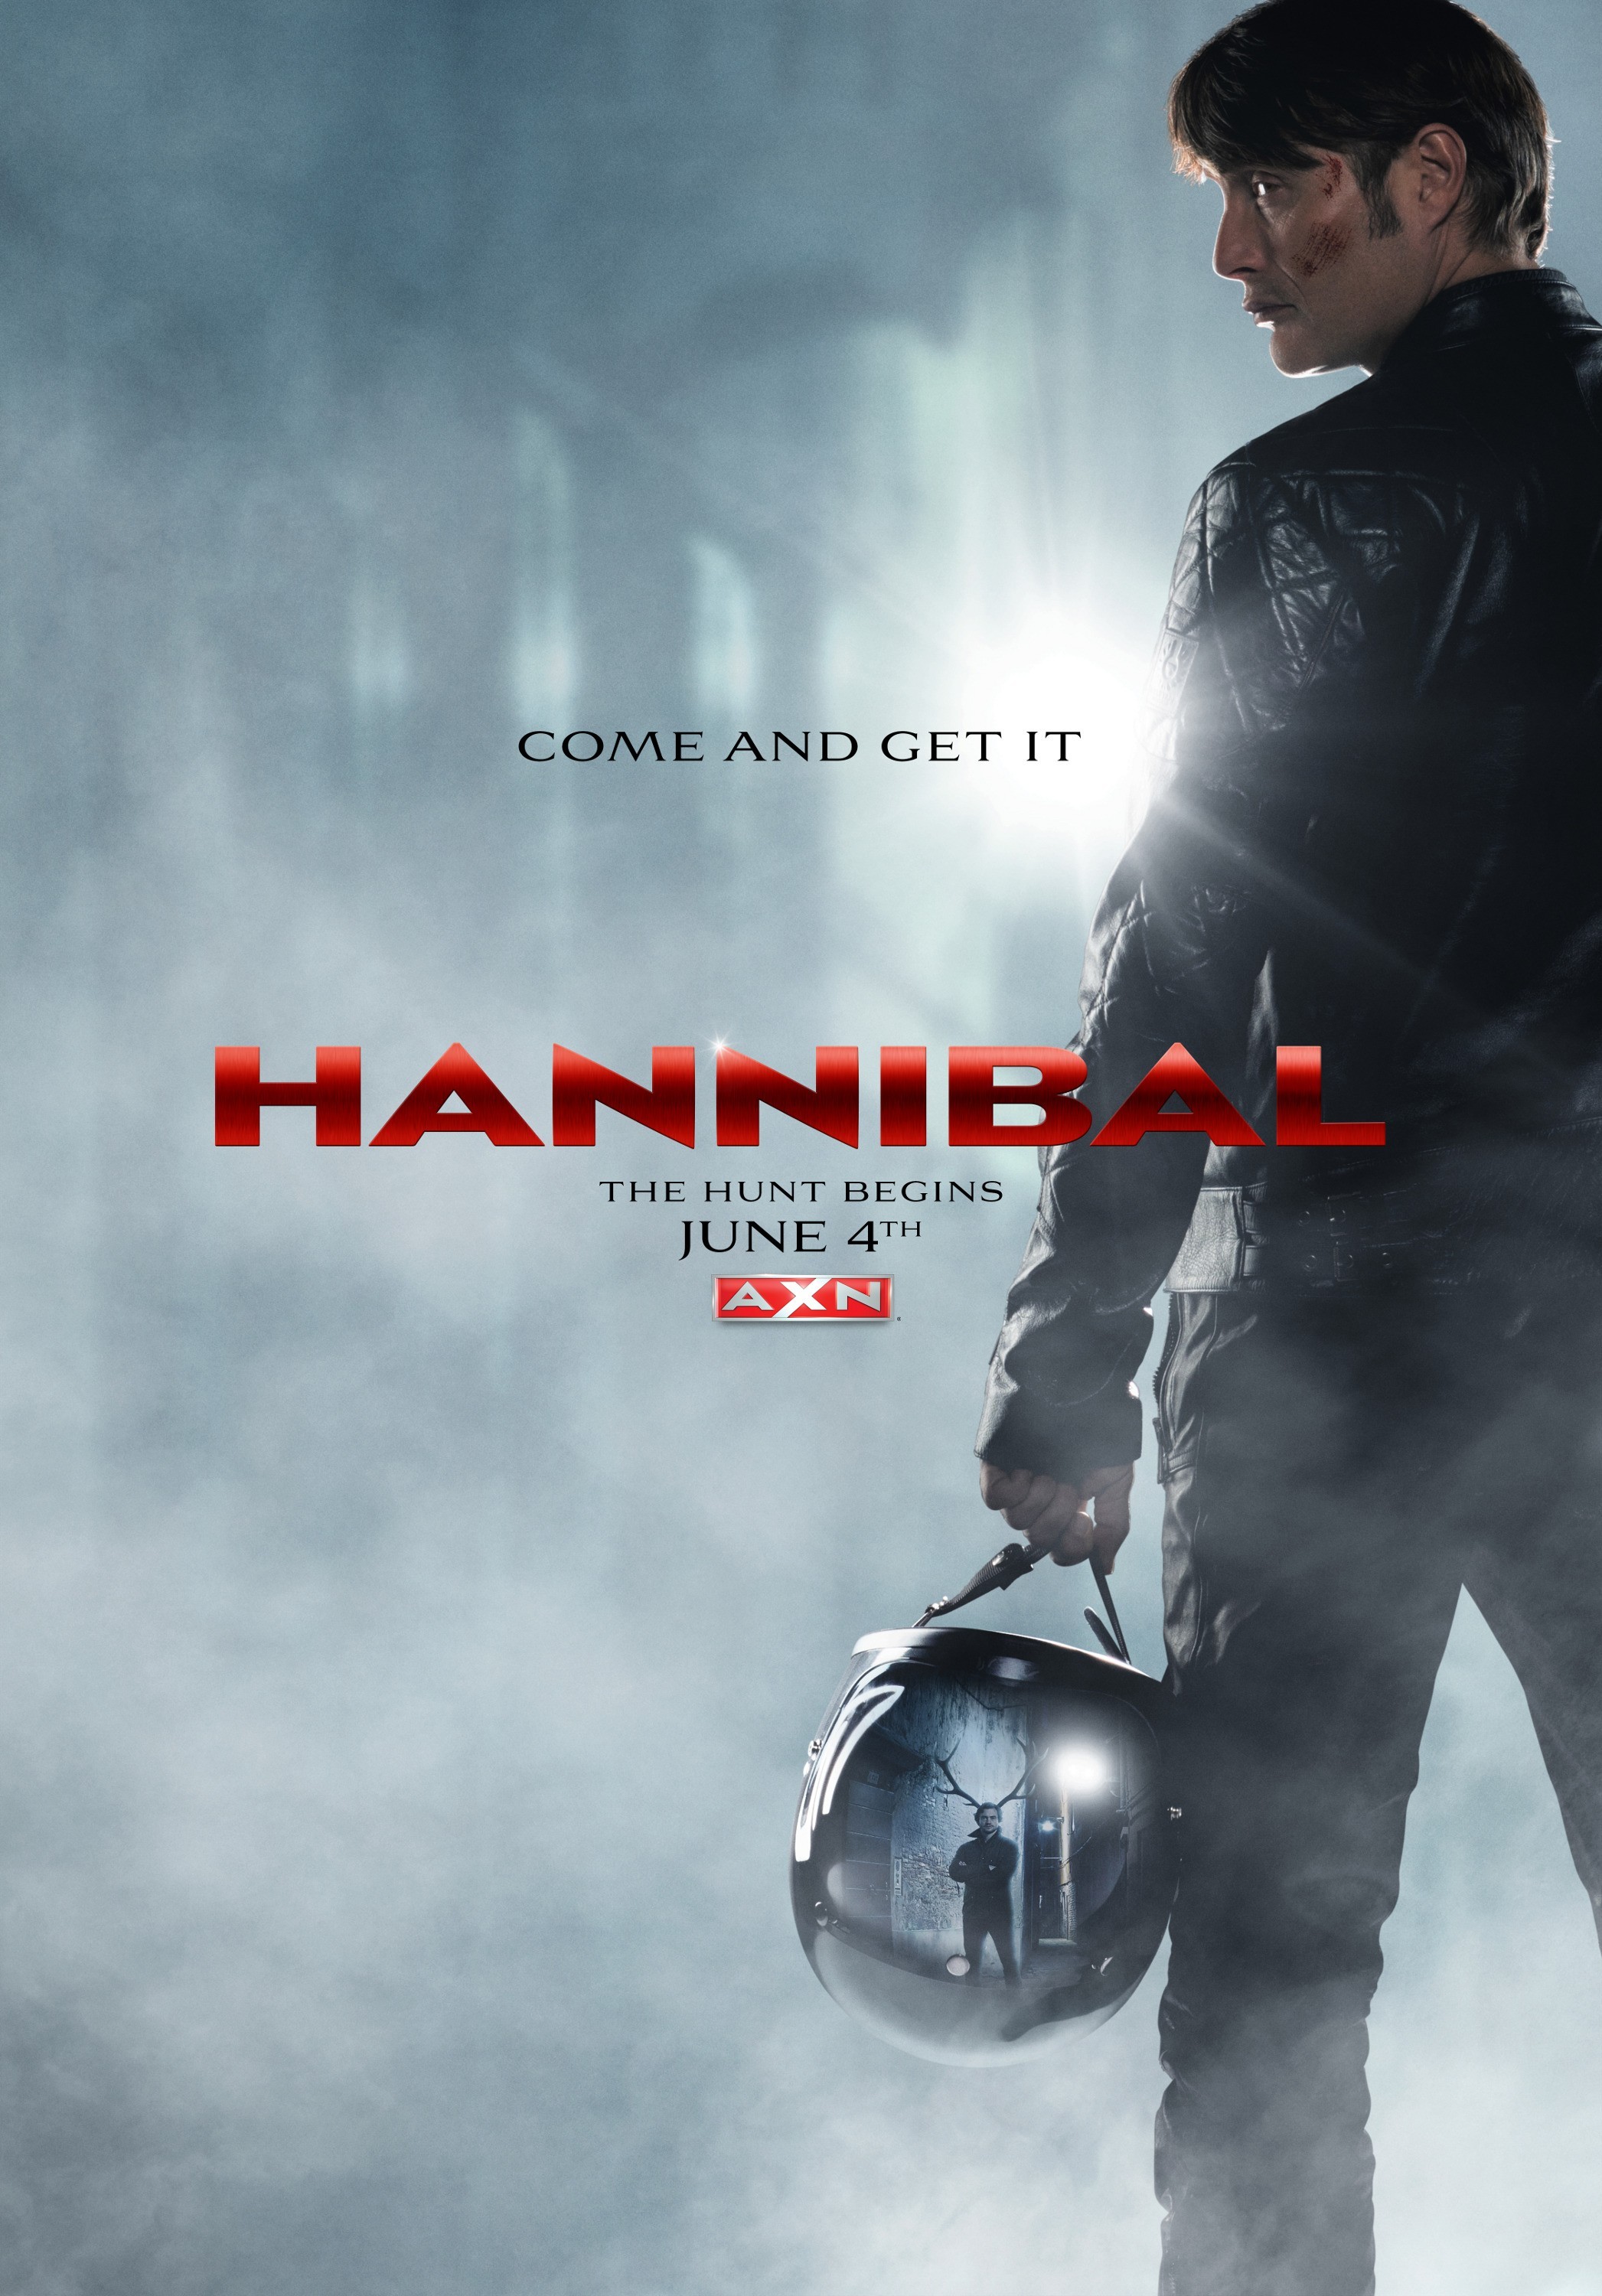 汉尼拔 第二季(Hannibal Season 2) - 电视剧图片 | 电视剧剧照 | 高清海报 - VeryCD电驴大全